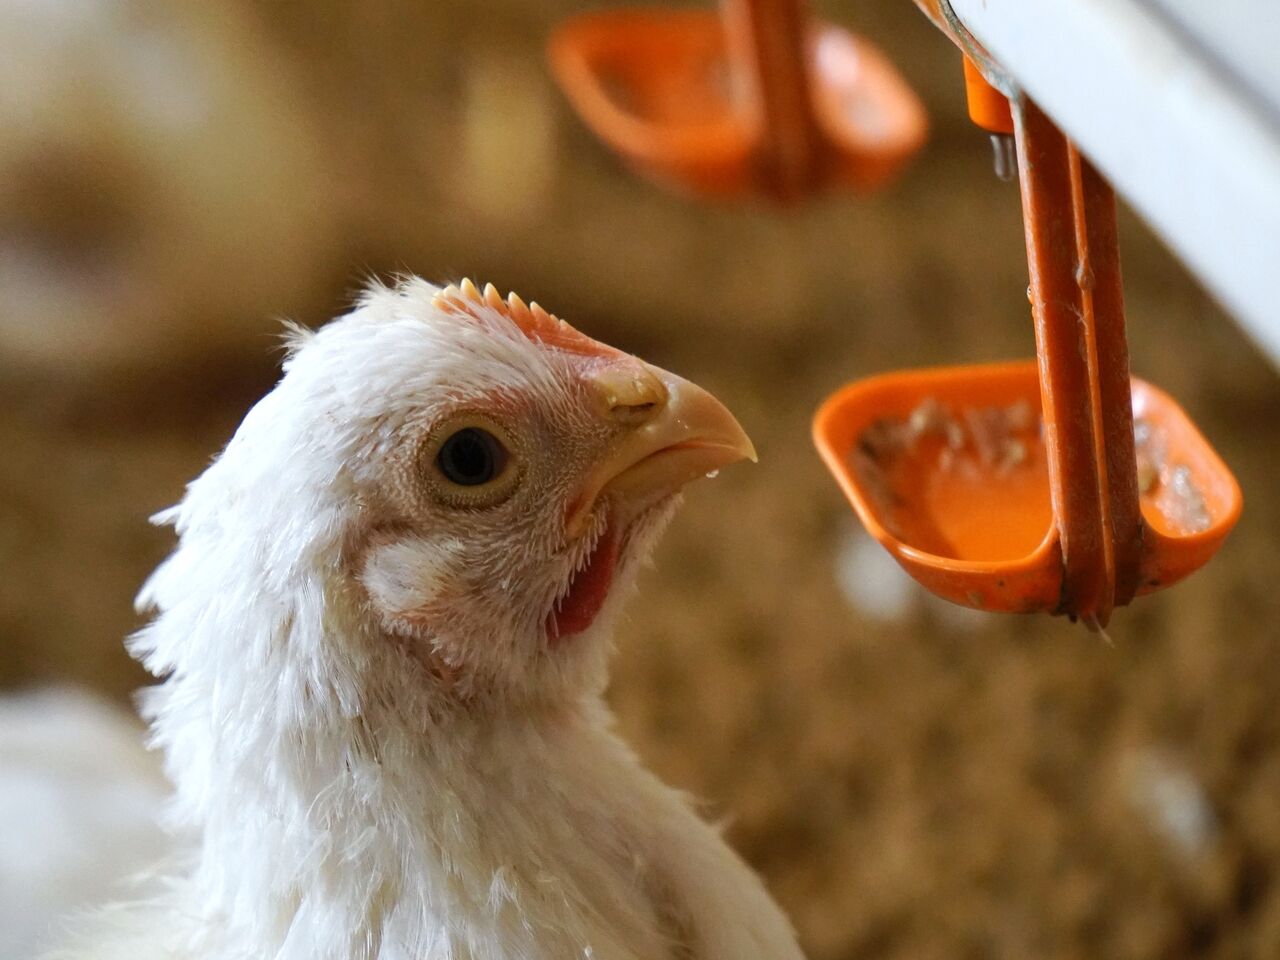 Оценена вероятность заражения птичьим гриппом через мясо курицы: Наука:  Наука и техника: Lenta.ru